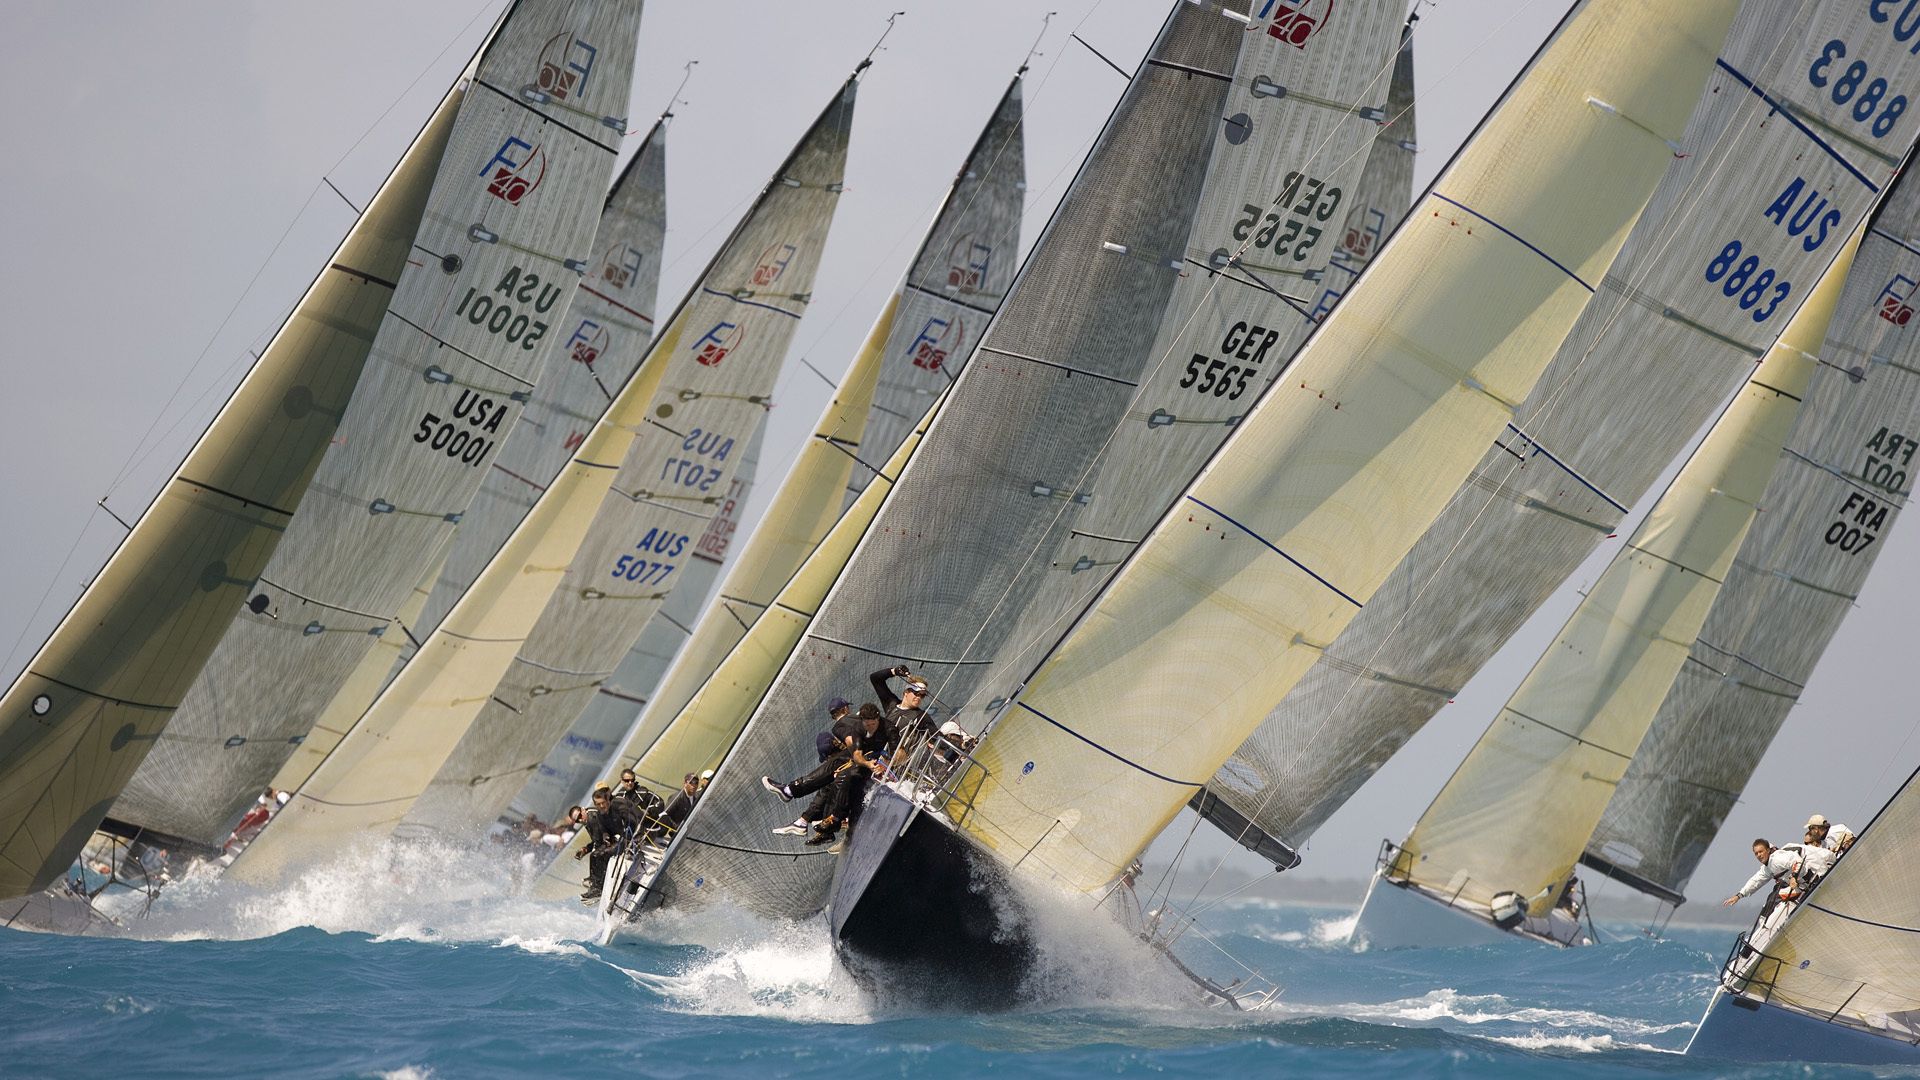 sports, waves, yacht, wind, race, regatta